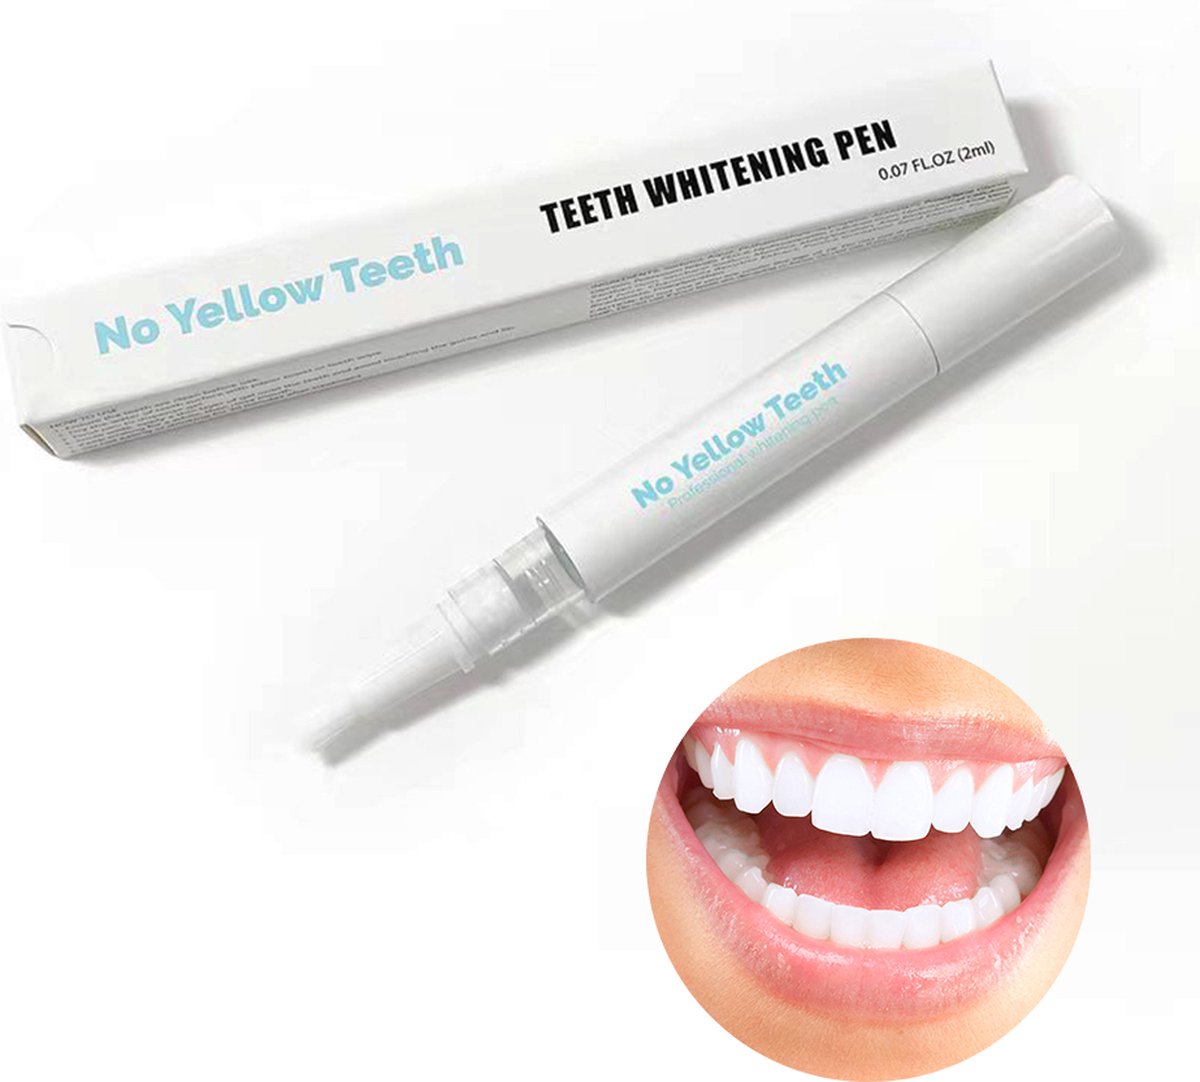 No Yellow Teeth - Whitening Pen - Witte Tanden - 100 % natuurlijke ingediënten - Peroxidevrij - Tanden bleken - Tandenbleekset - Teeth Whitening - Tandenbleker